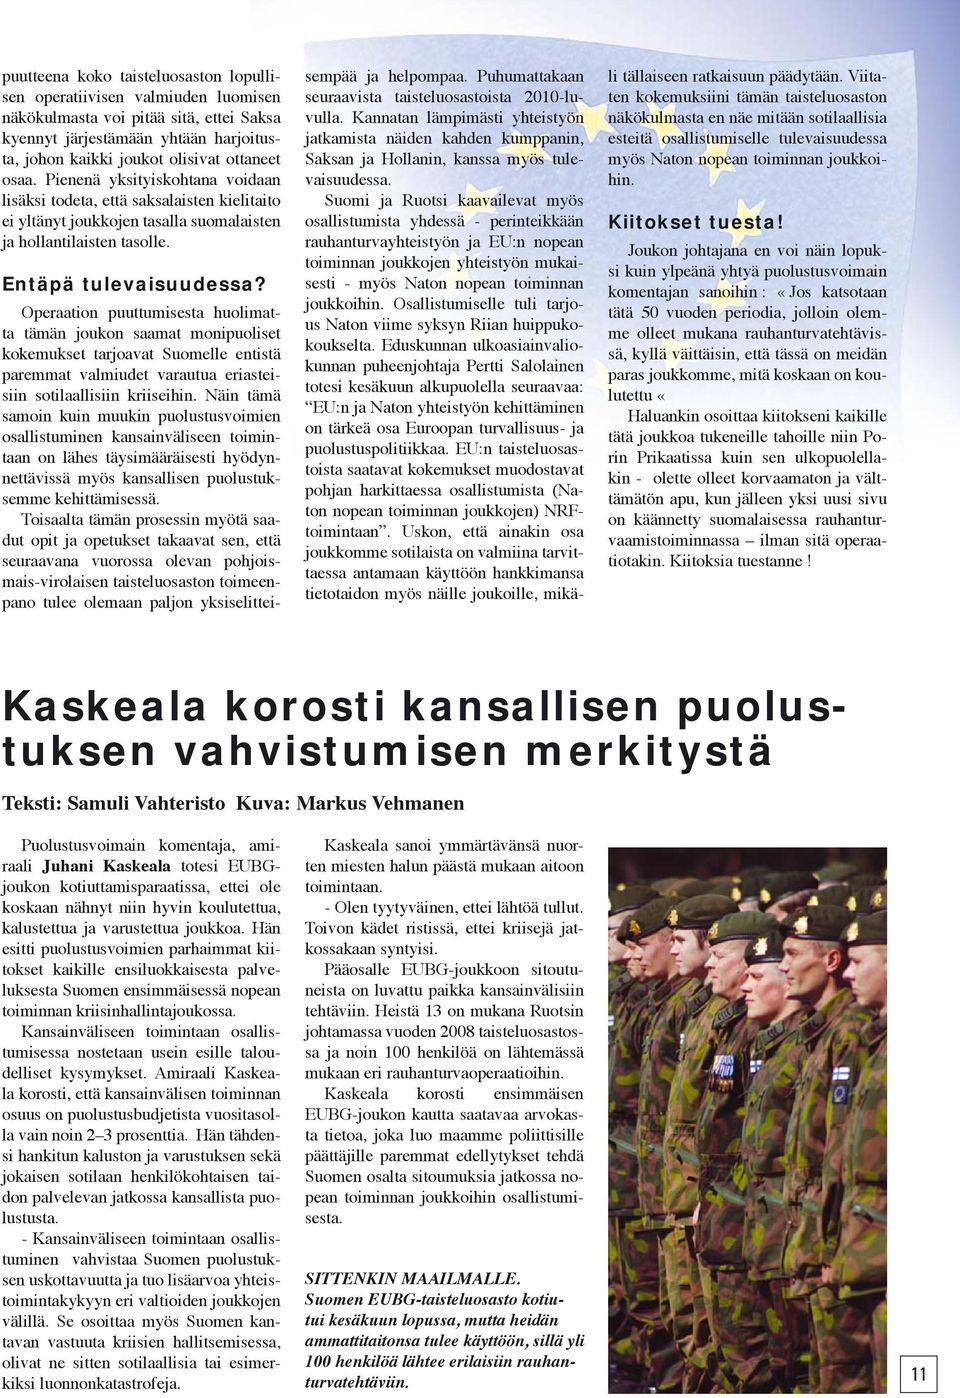 Operaation puuttumisesta huolimatta tämän joukon saamat monipuoliset kokemukset tarjoavat Suomelle entistä paremmat valmiudet varautua eriasteisiin sotilaallisiin kriiseihin.